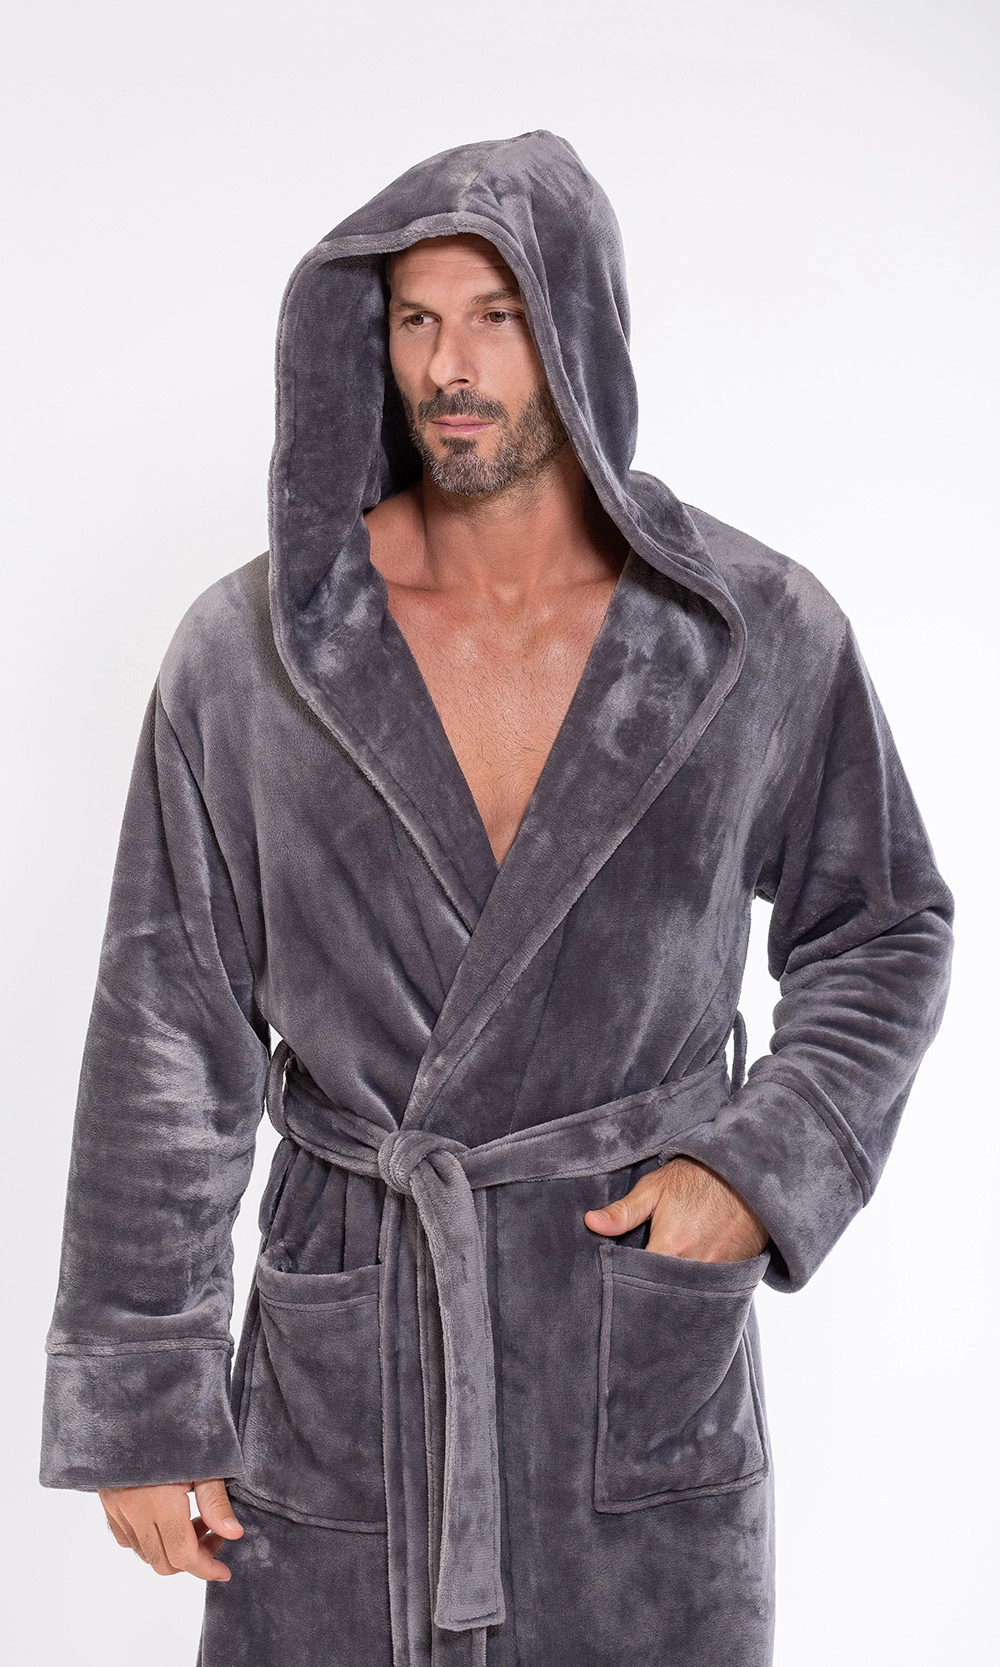 Men's Hooded Soft Plush Fleece Bathrobe Full Length Robe - On Sale